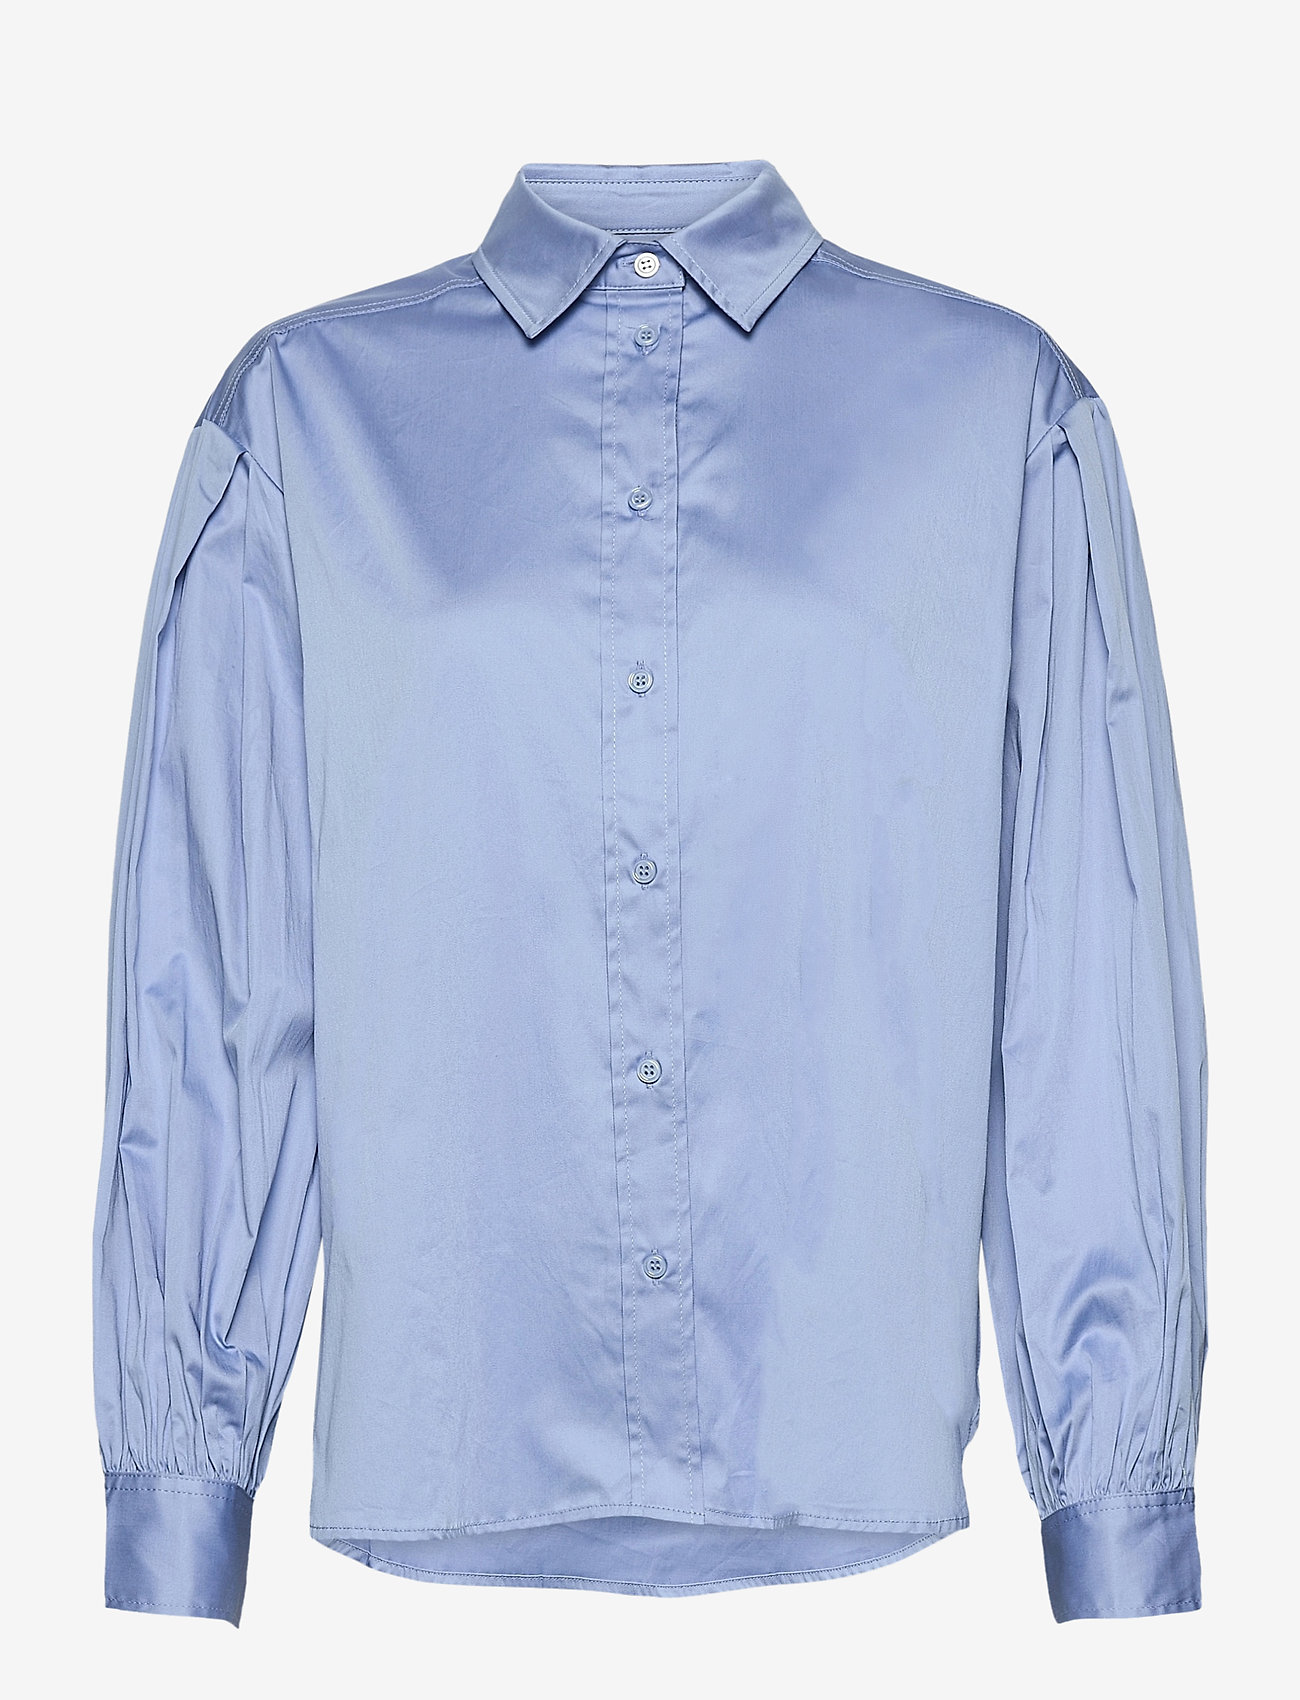 Part Two - GyaPW SH - marškiniai ilgomis rankovėmis - vista blue - 0